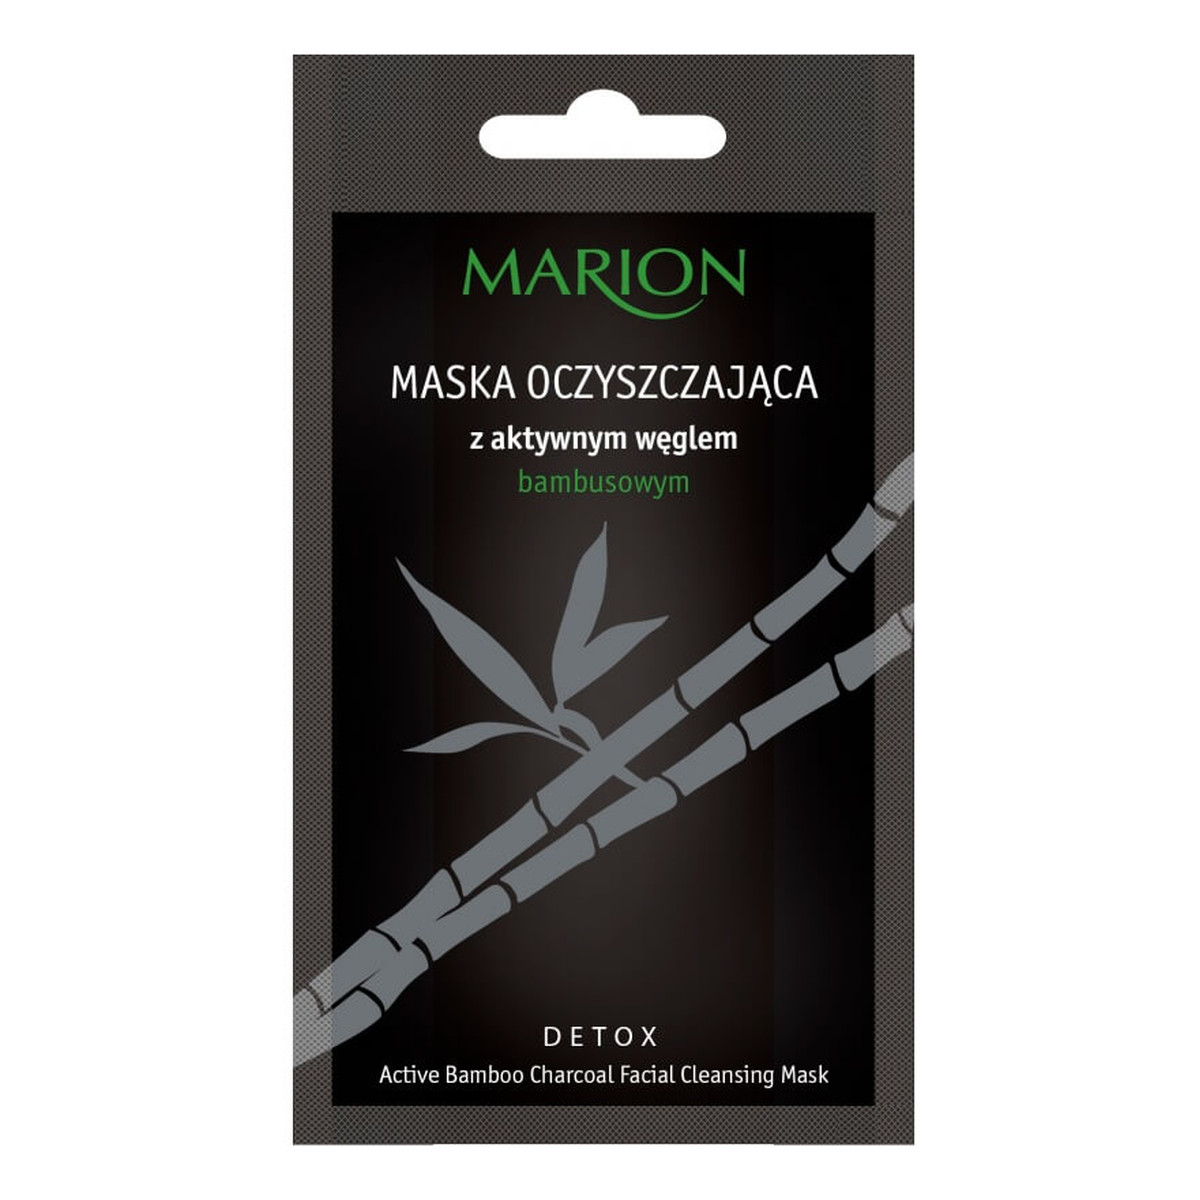 Marion Detox Maska Oczyszczająca z aktywnym węglem bambusowym 10g